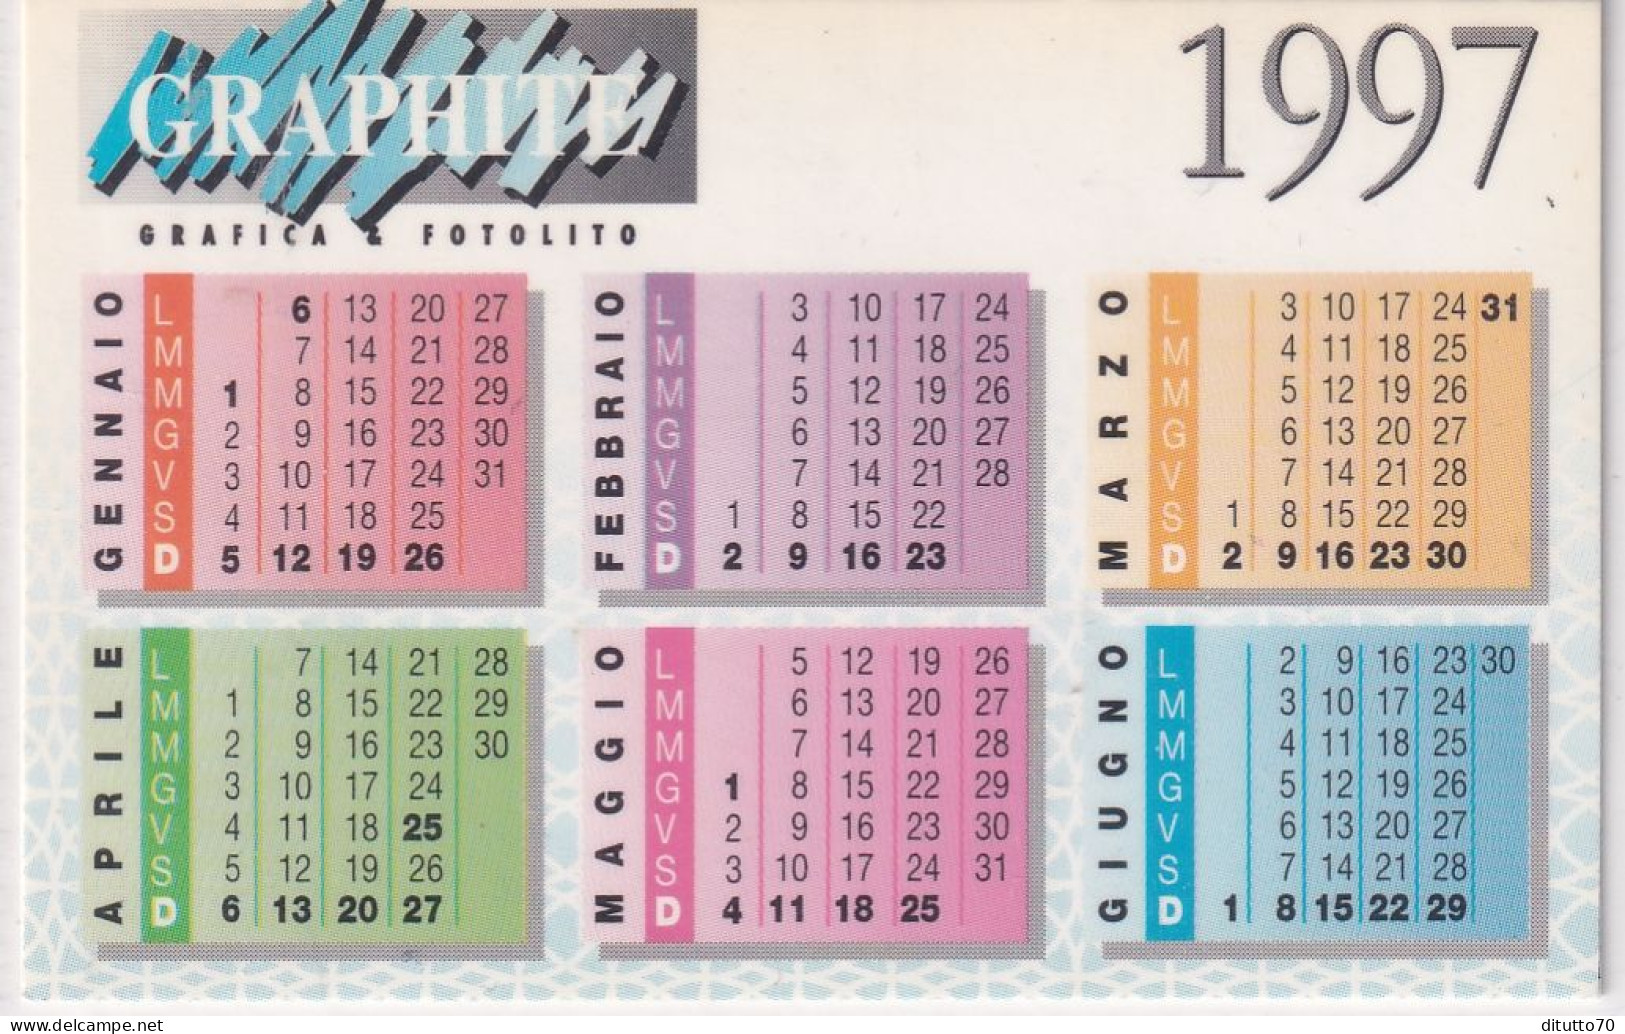 Calendarietto - Graphite - Anno 1997 - Small : 1991-00